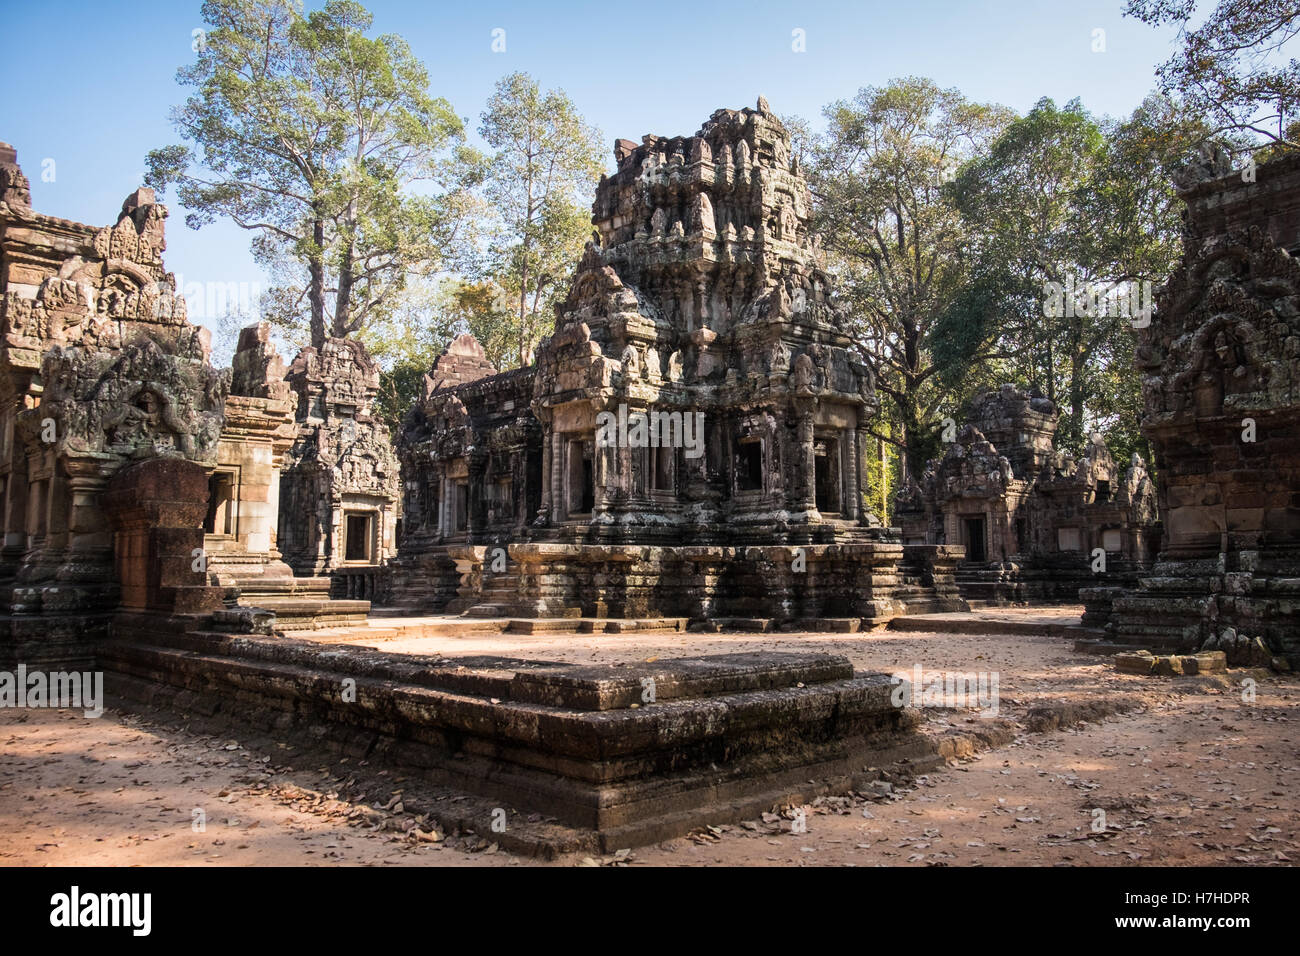 Une vue générale du temple Chau dans le Siem Reap, Cambodge Banque D'Images